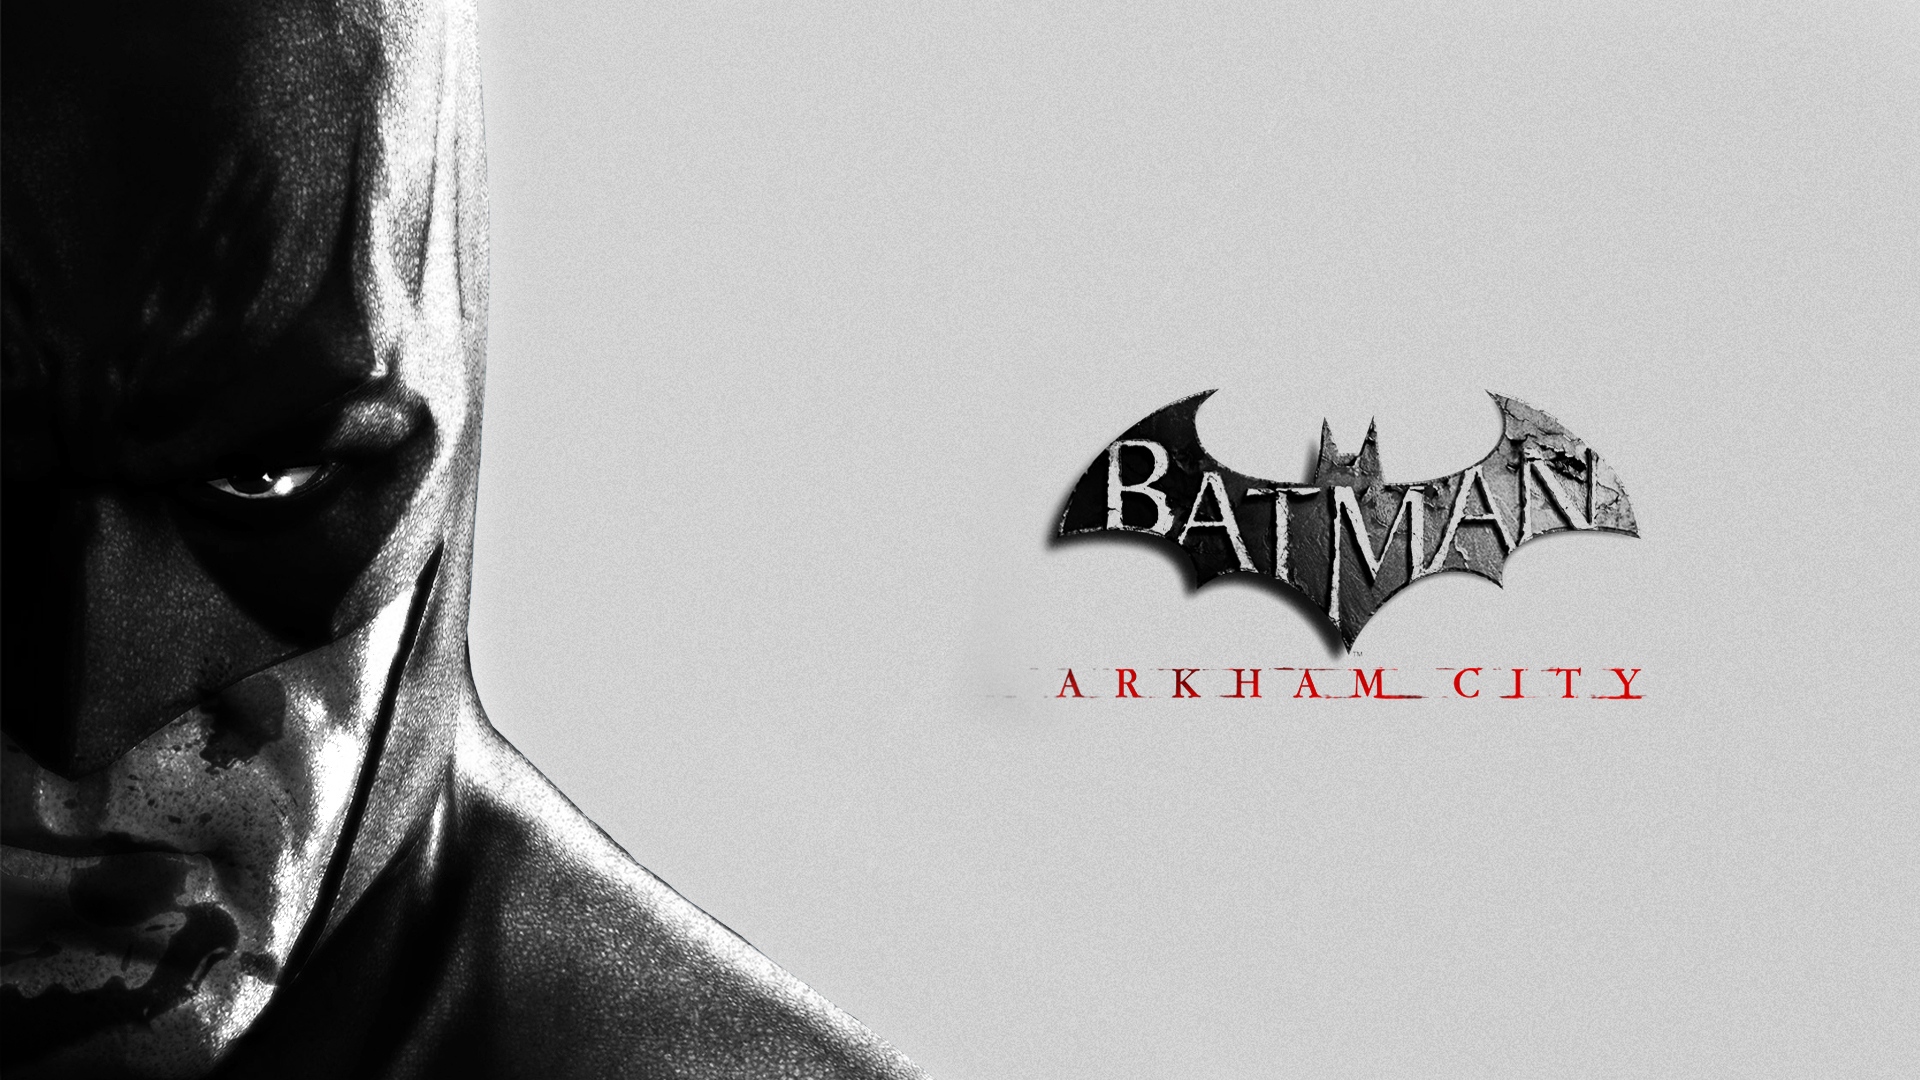 Wallpaper Batman Arkham City Logo - Batman Arkham City - HD Wallpaper 